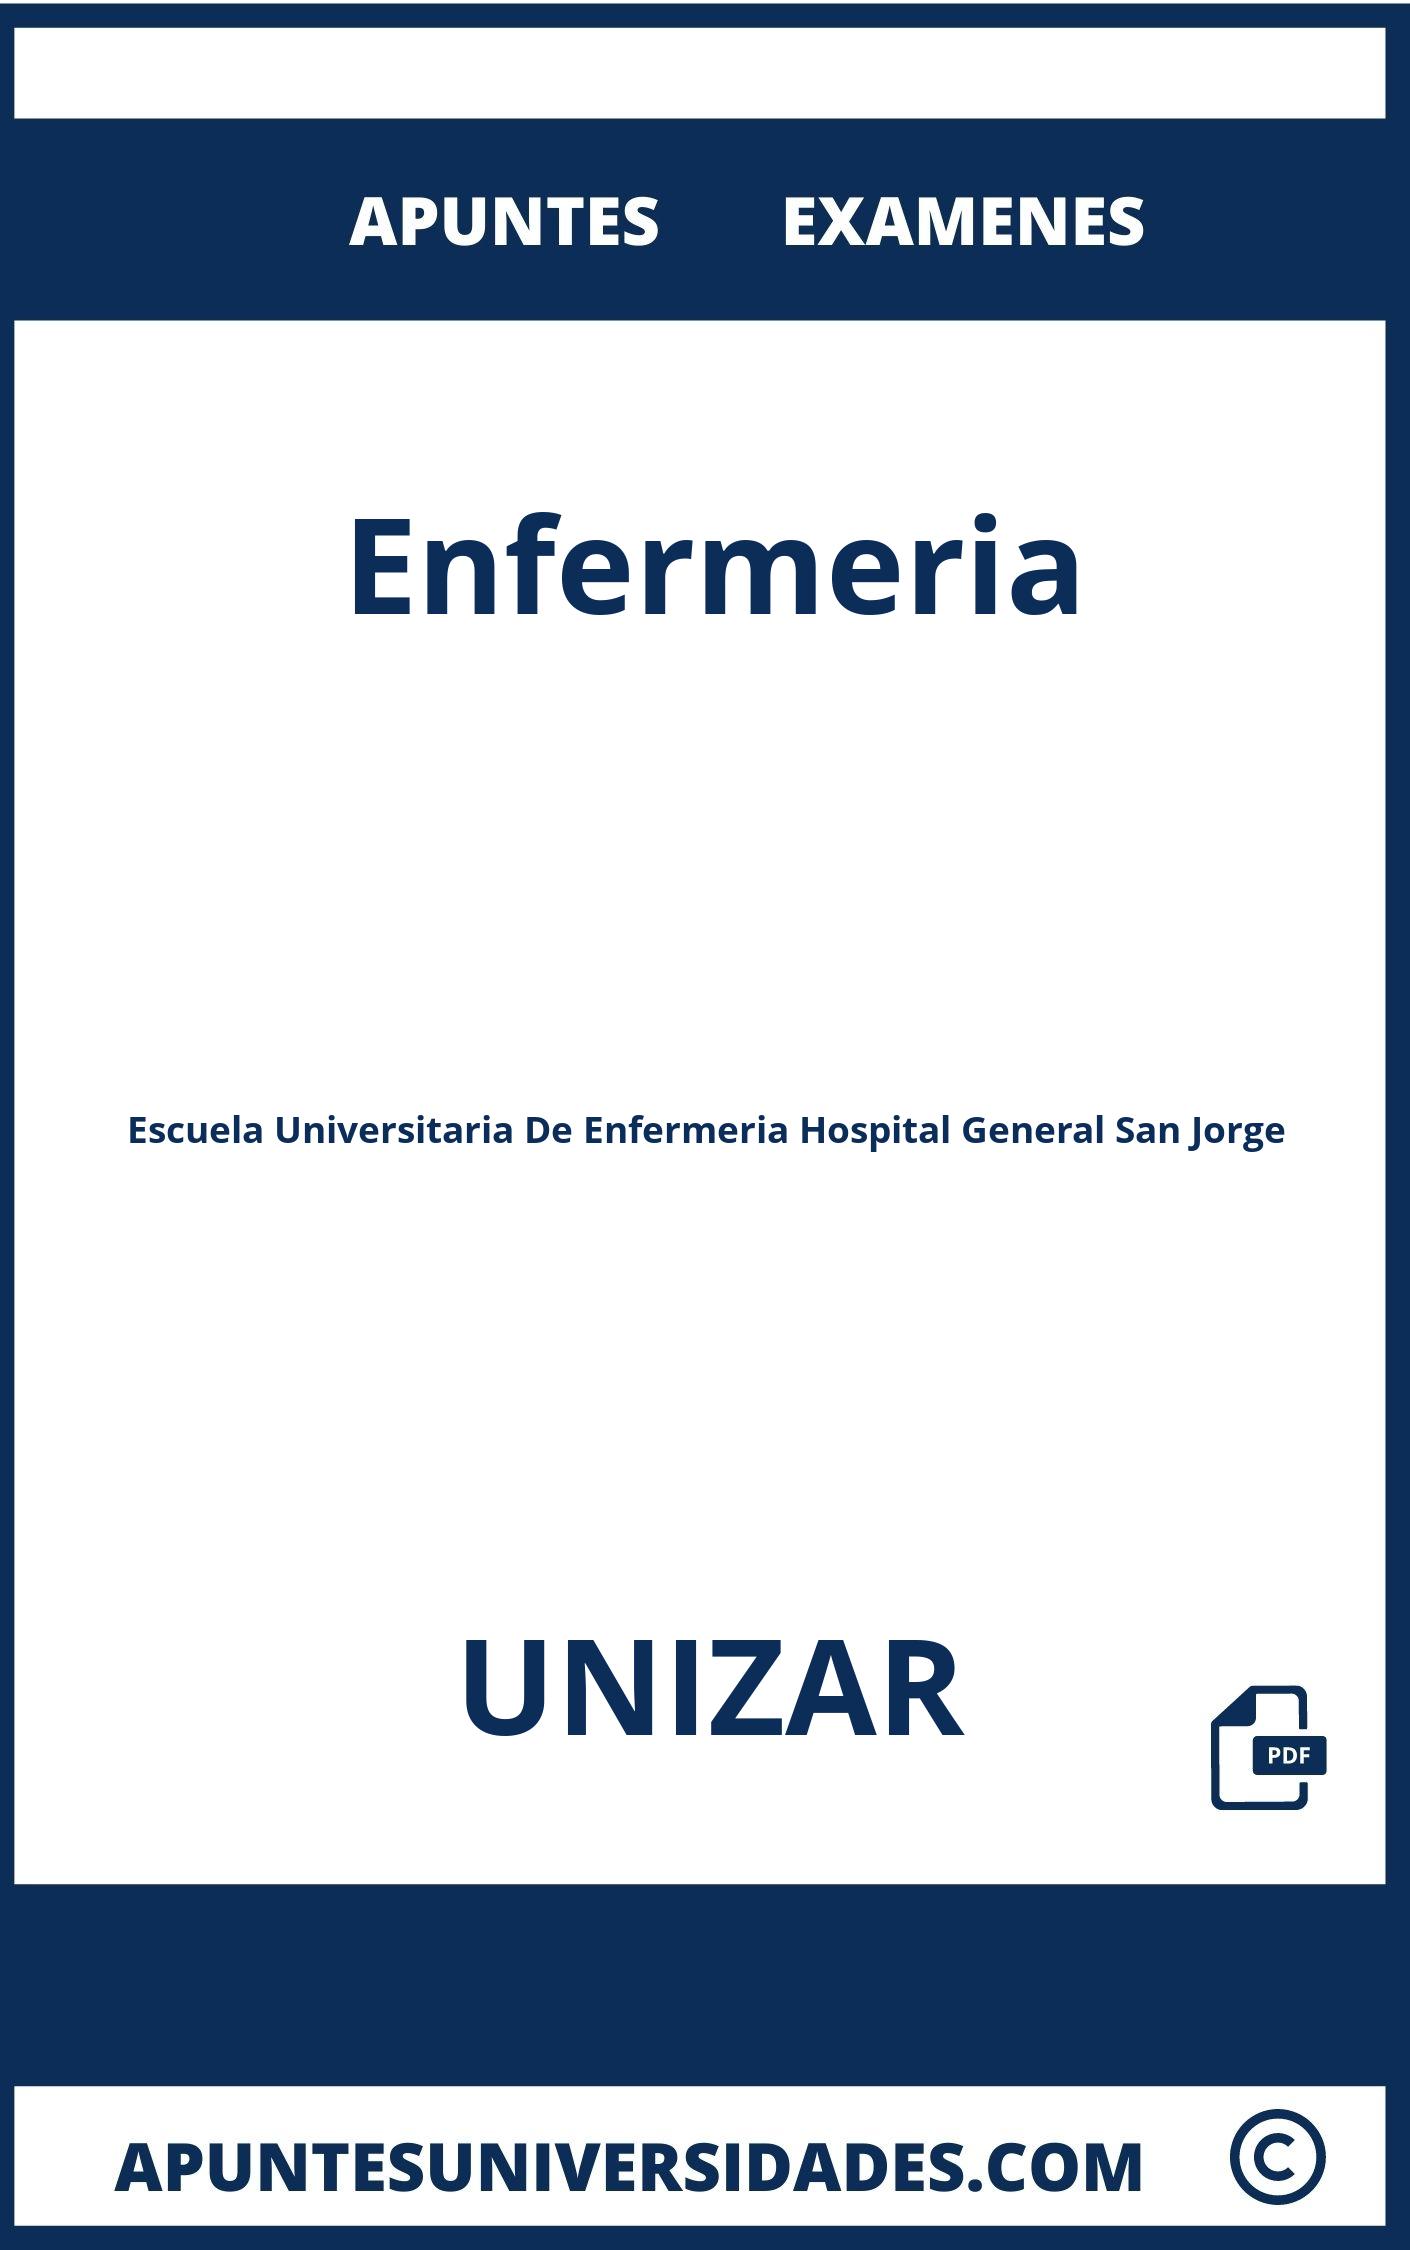 Apuntes y Examenes Enfermeria UNIZAR